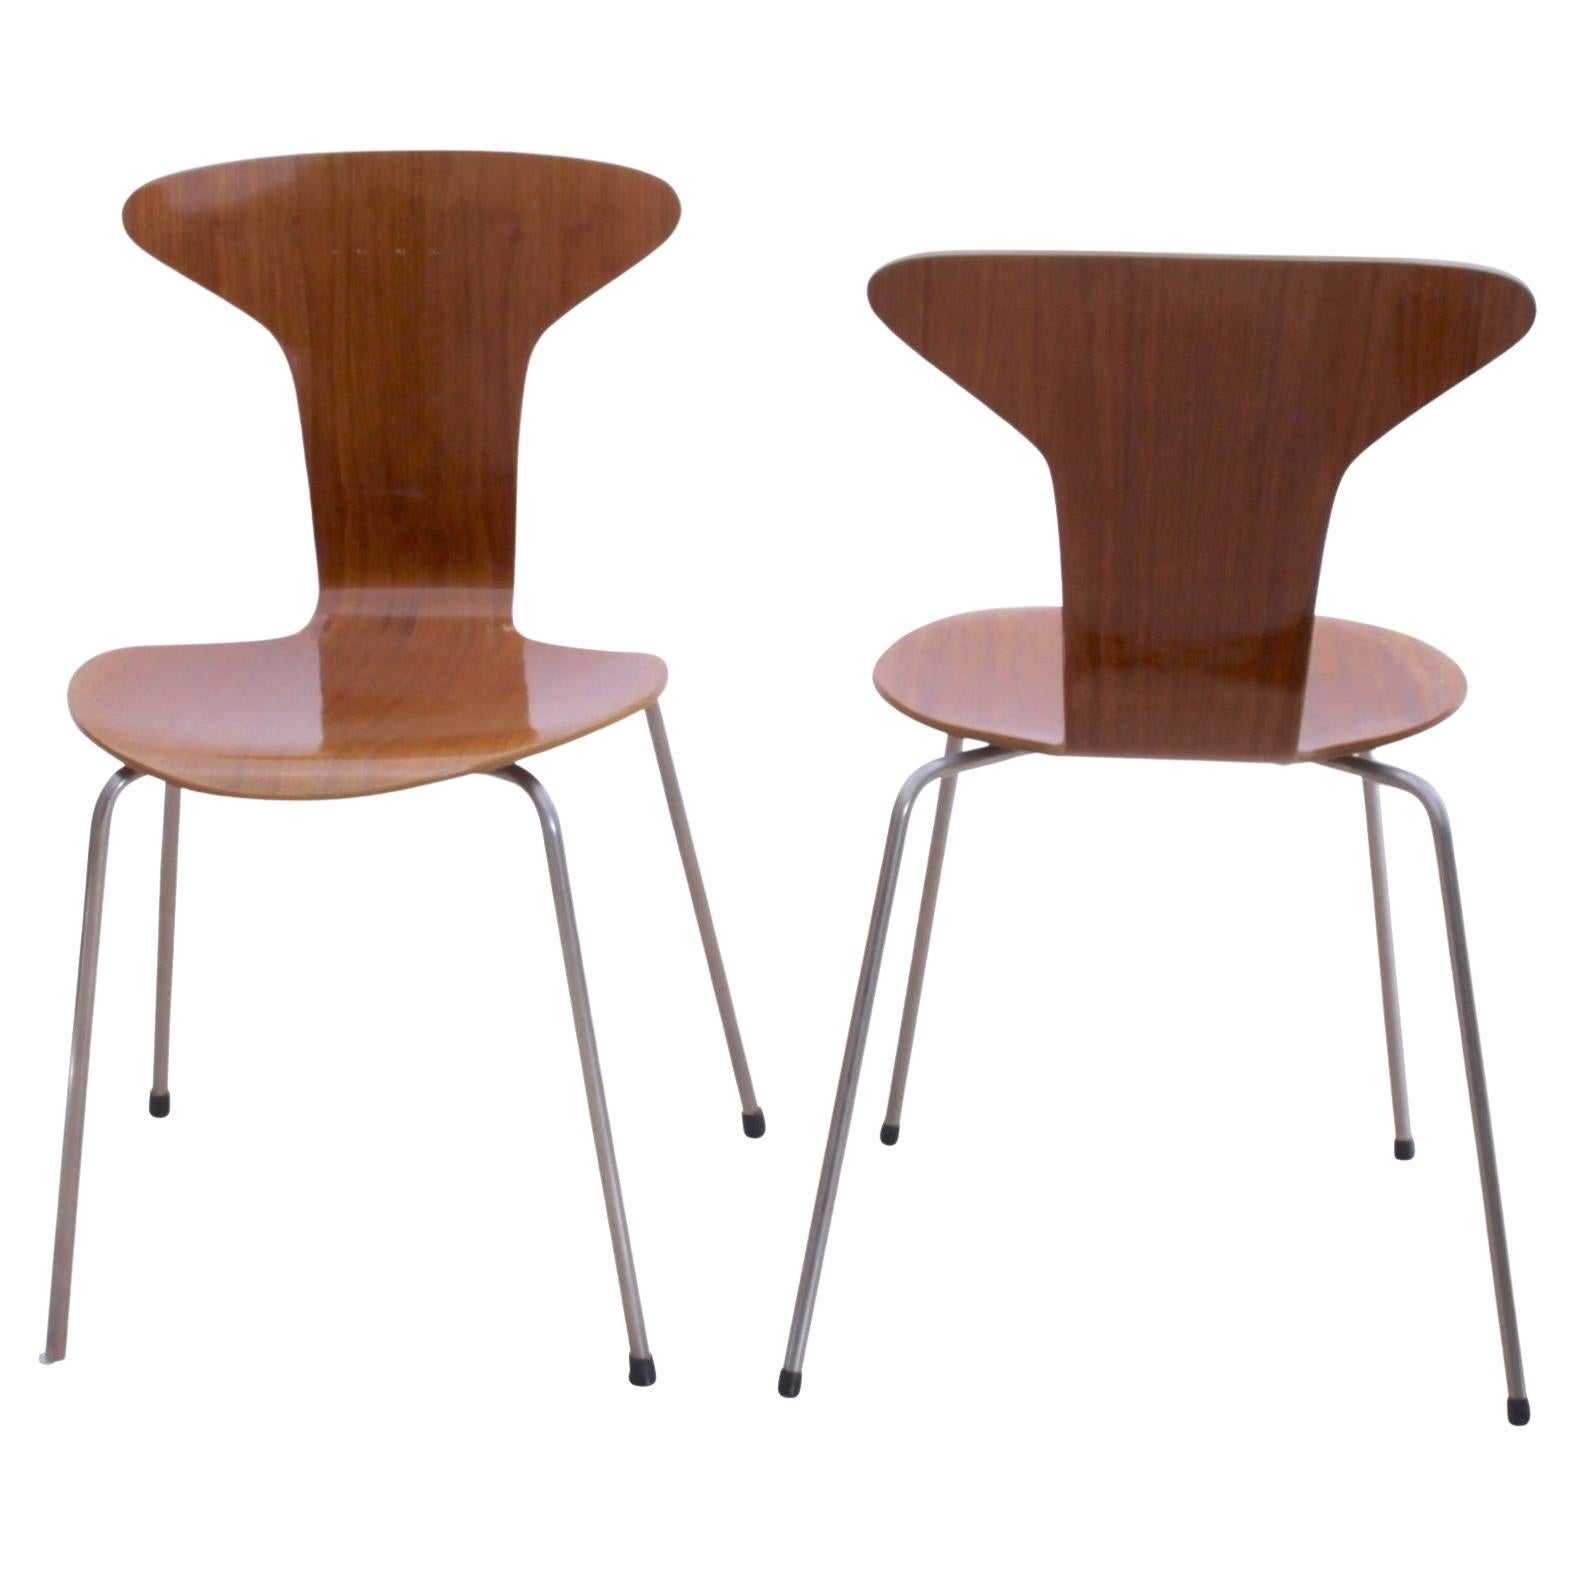 Paire de chaises 3105 « Mosquito » d'Arne Jacobsen, F. Hansen, teck, Danemark, années 1950